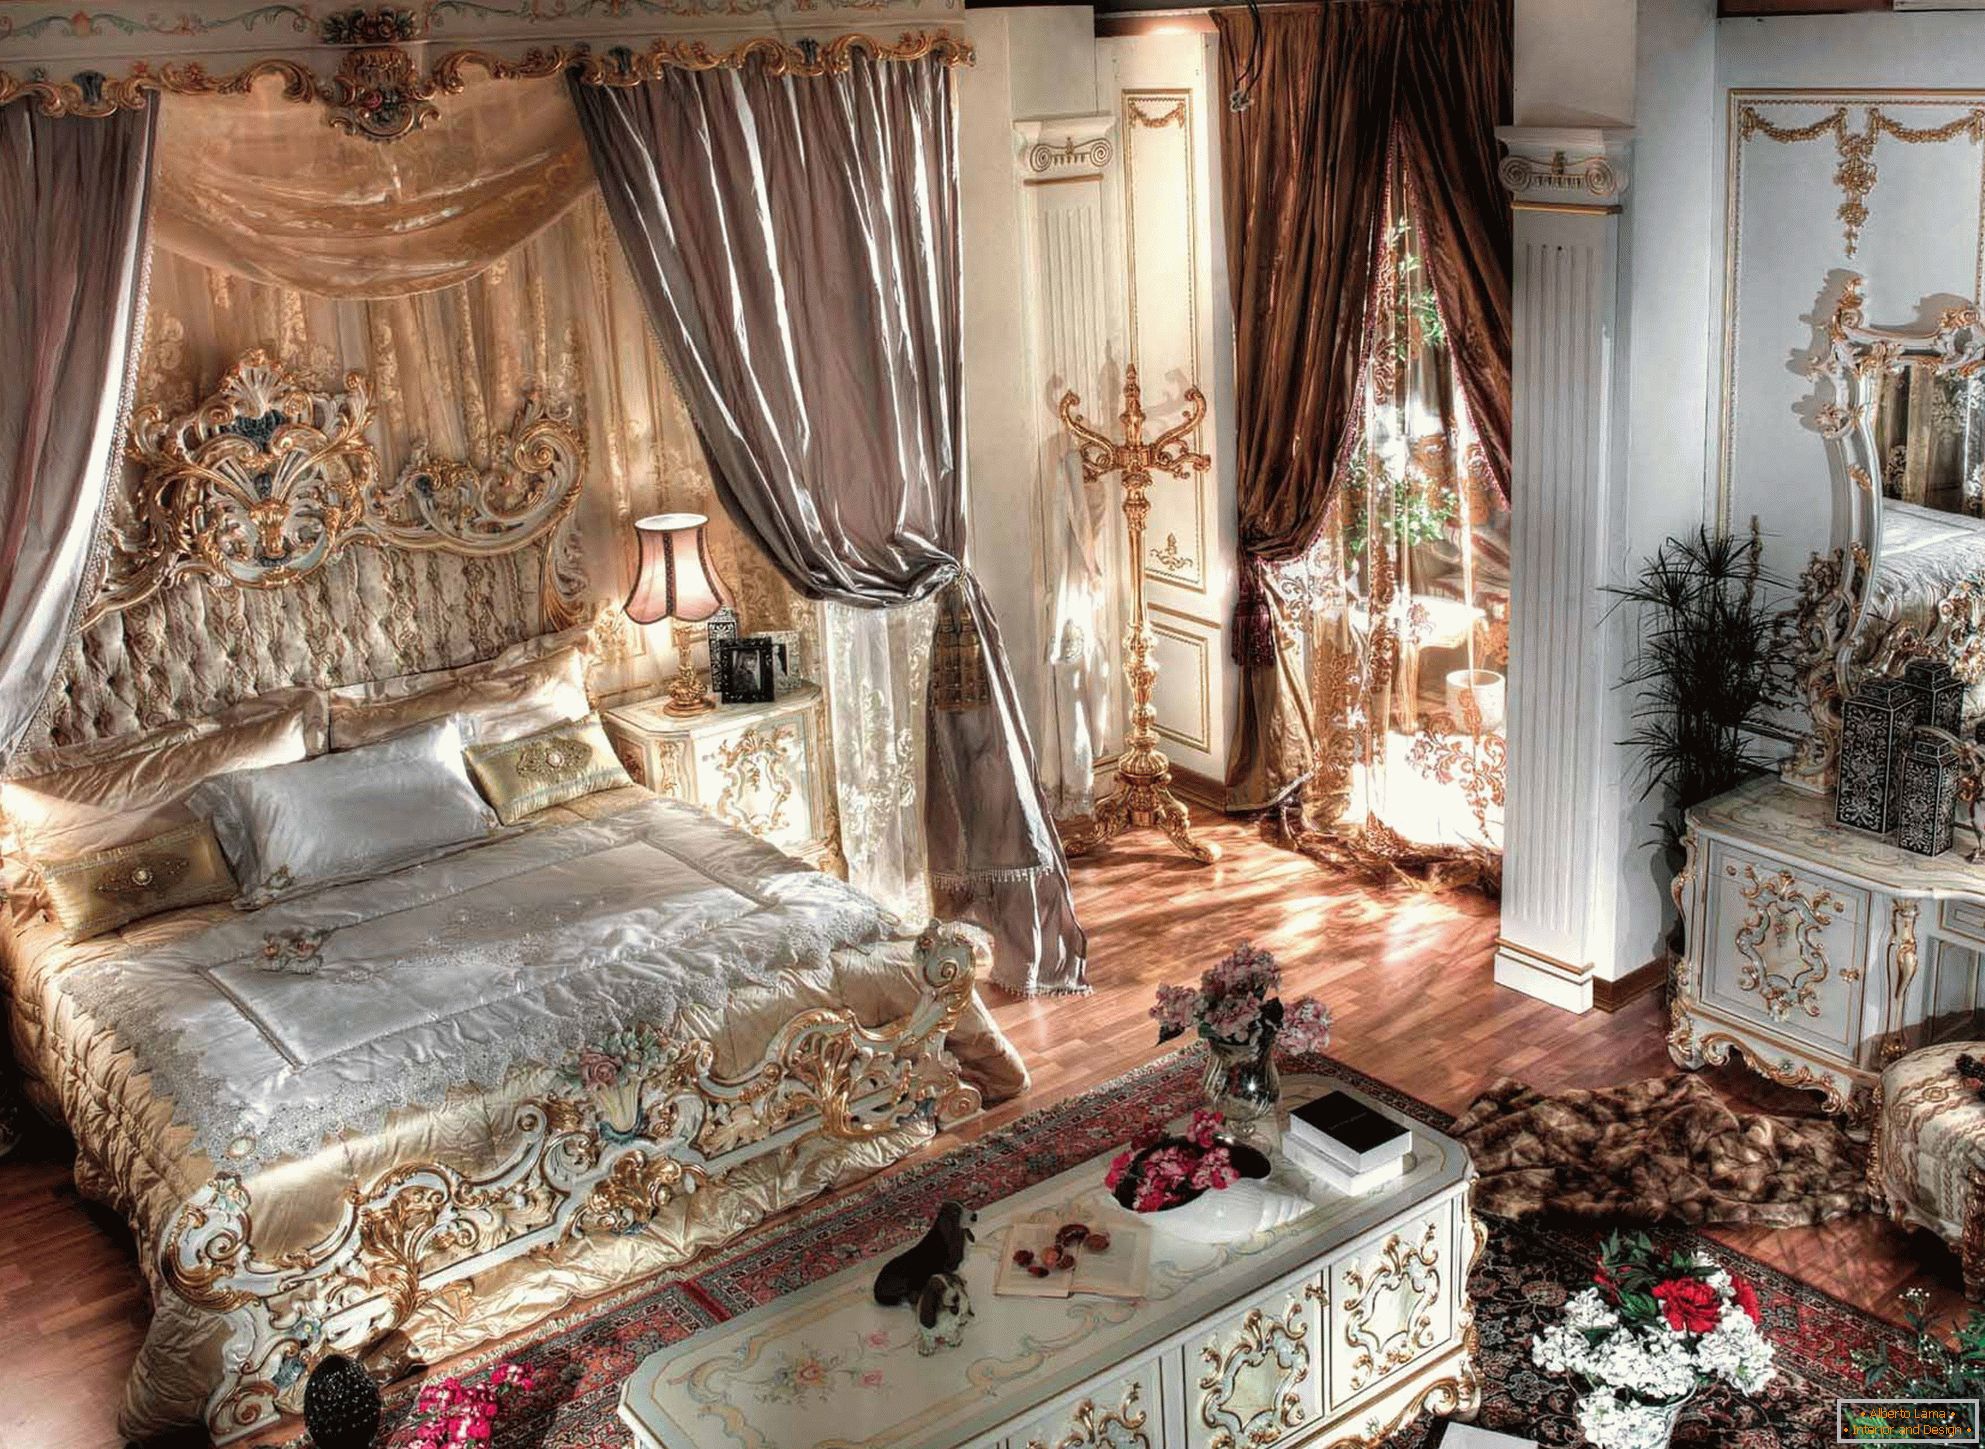 Luxuoso quarto barroco com tectos altos. No centro da composição é uma cama enorme feita de madeira com costas esculpidas.